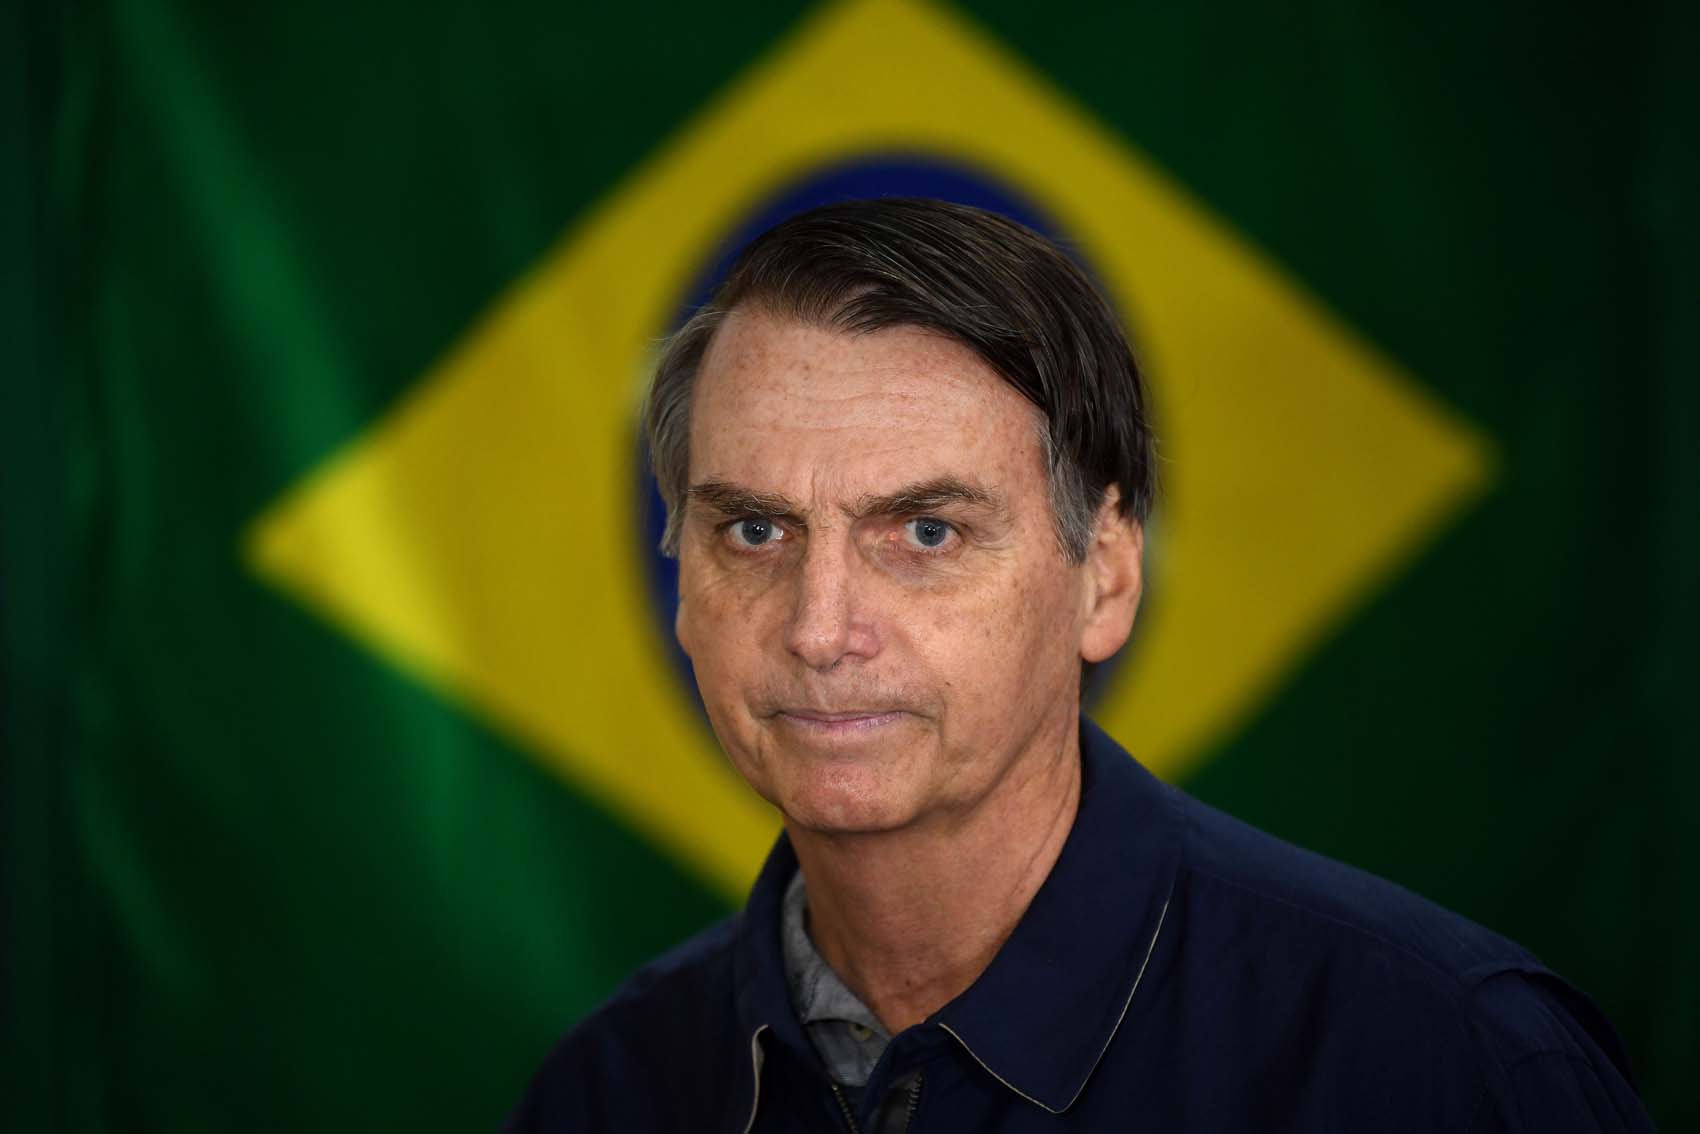 Comisión Europea urge a Bolsonaro a “consolidar la democracia” en Brasil